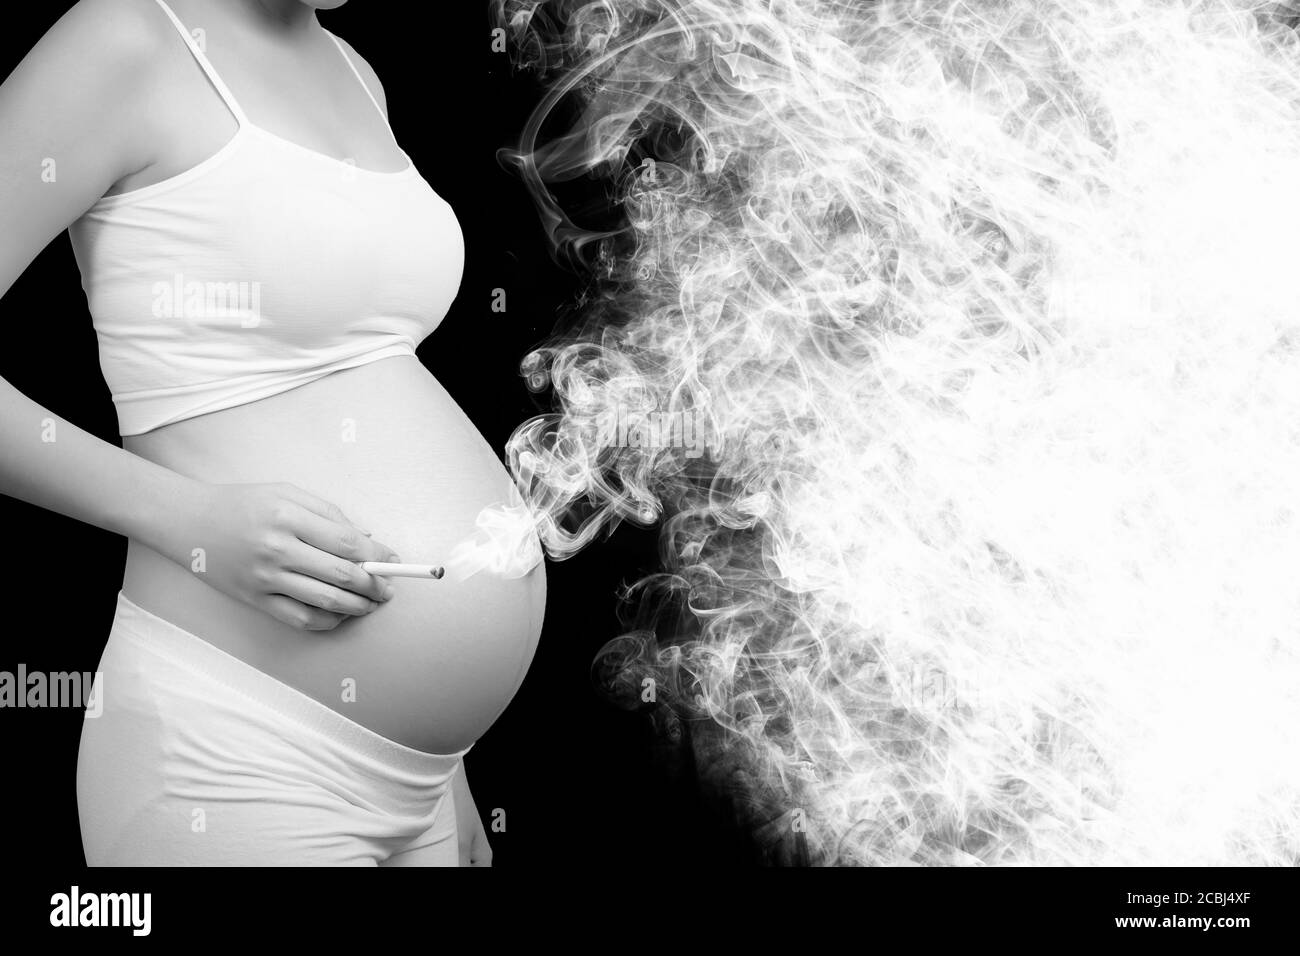 Fumar mata concepto: Mujer embarazada fumar cigarrillos causa cáncer, peligro y riesgos letales para la salud de los padres y el bebé. Espacio vacío para el texto. Foto de stock